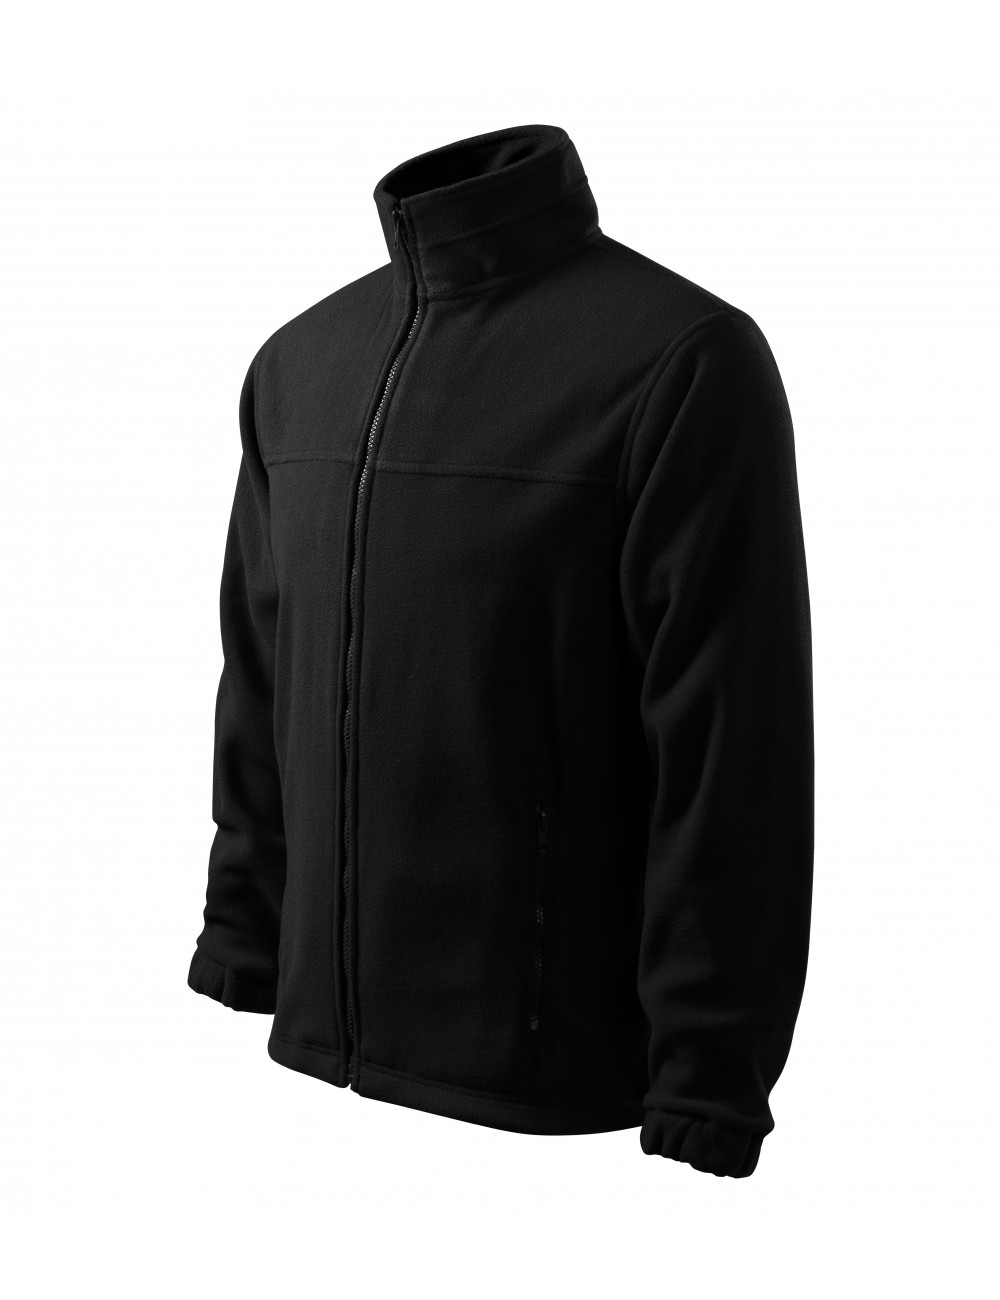 Klassisches Herren-Fleece-Sweatshirt 280g Jacke 501 schwarz Rimeck